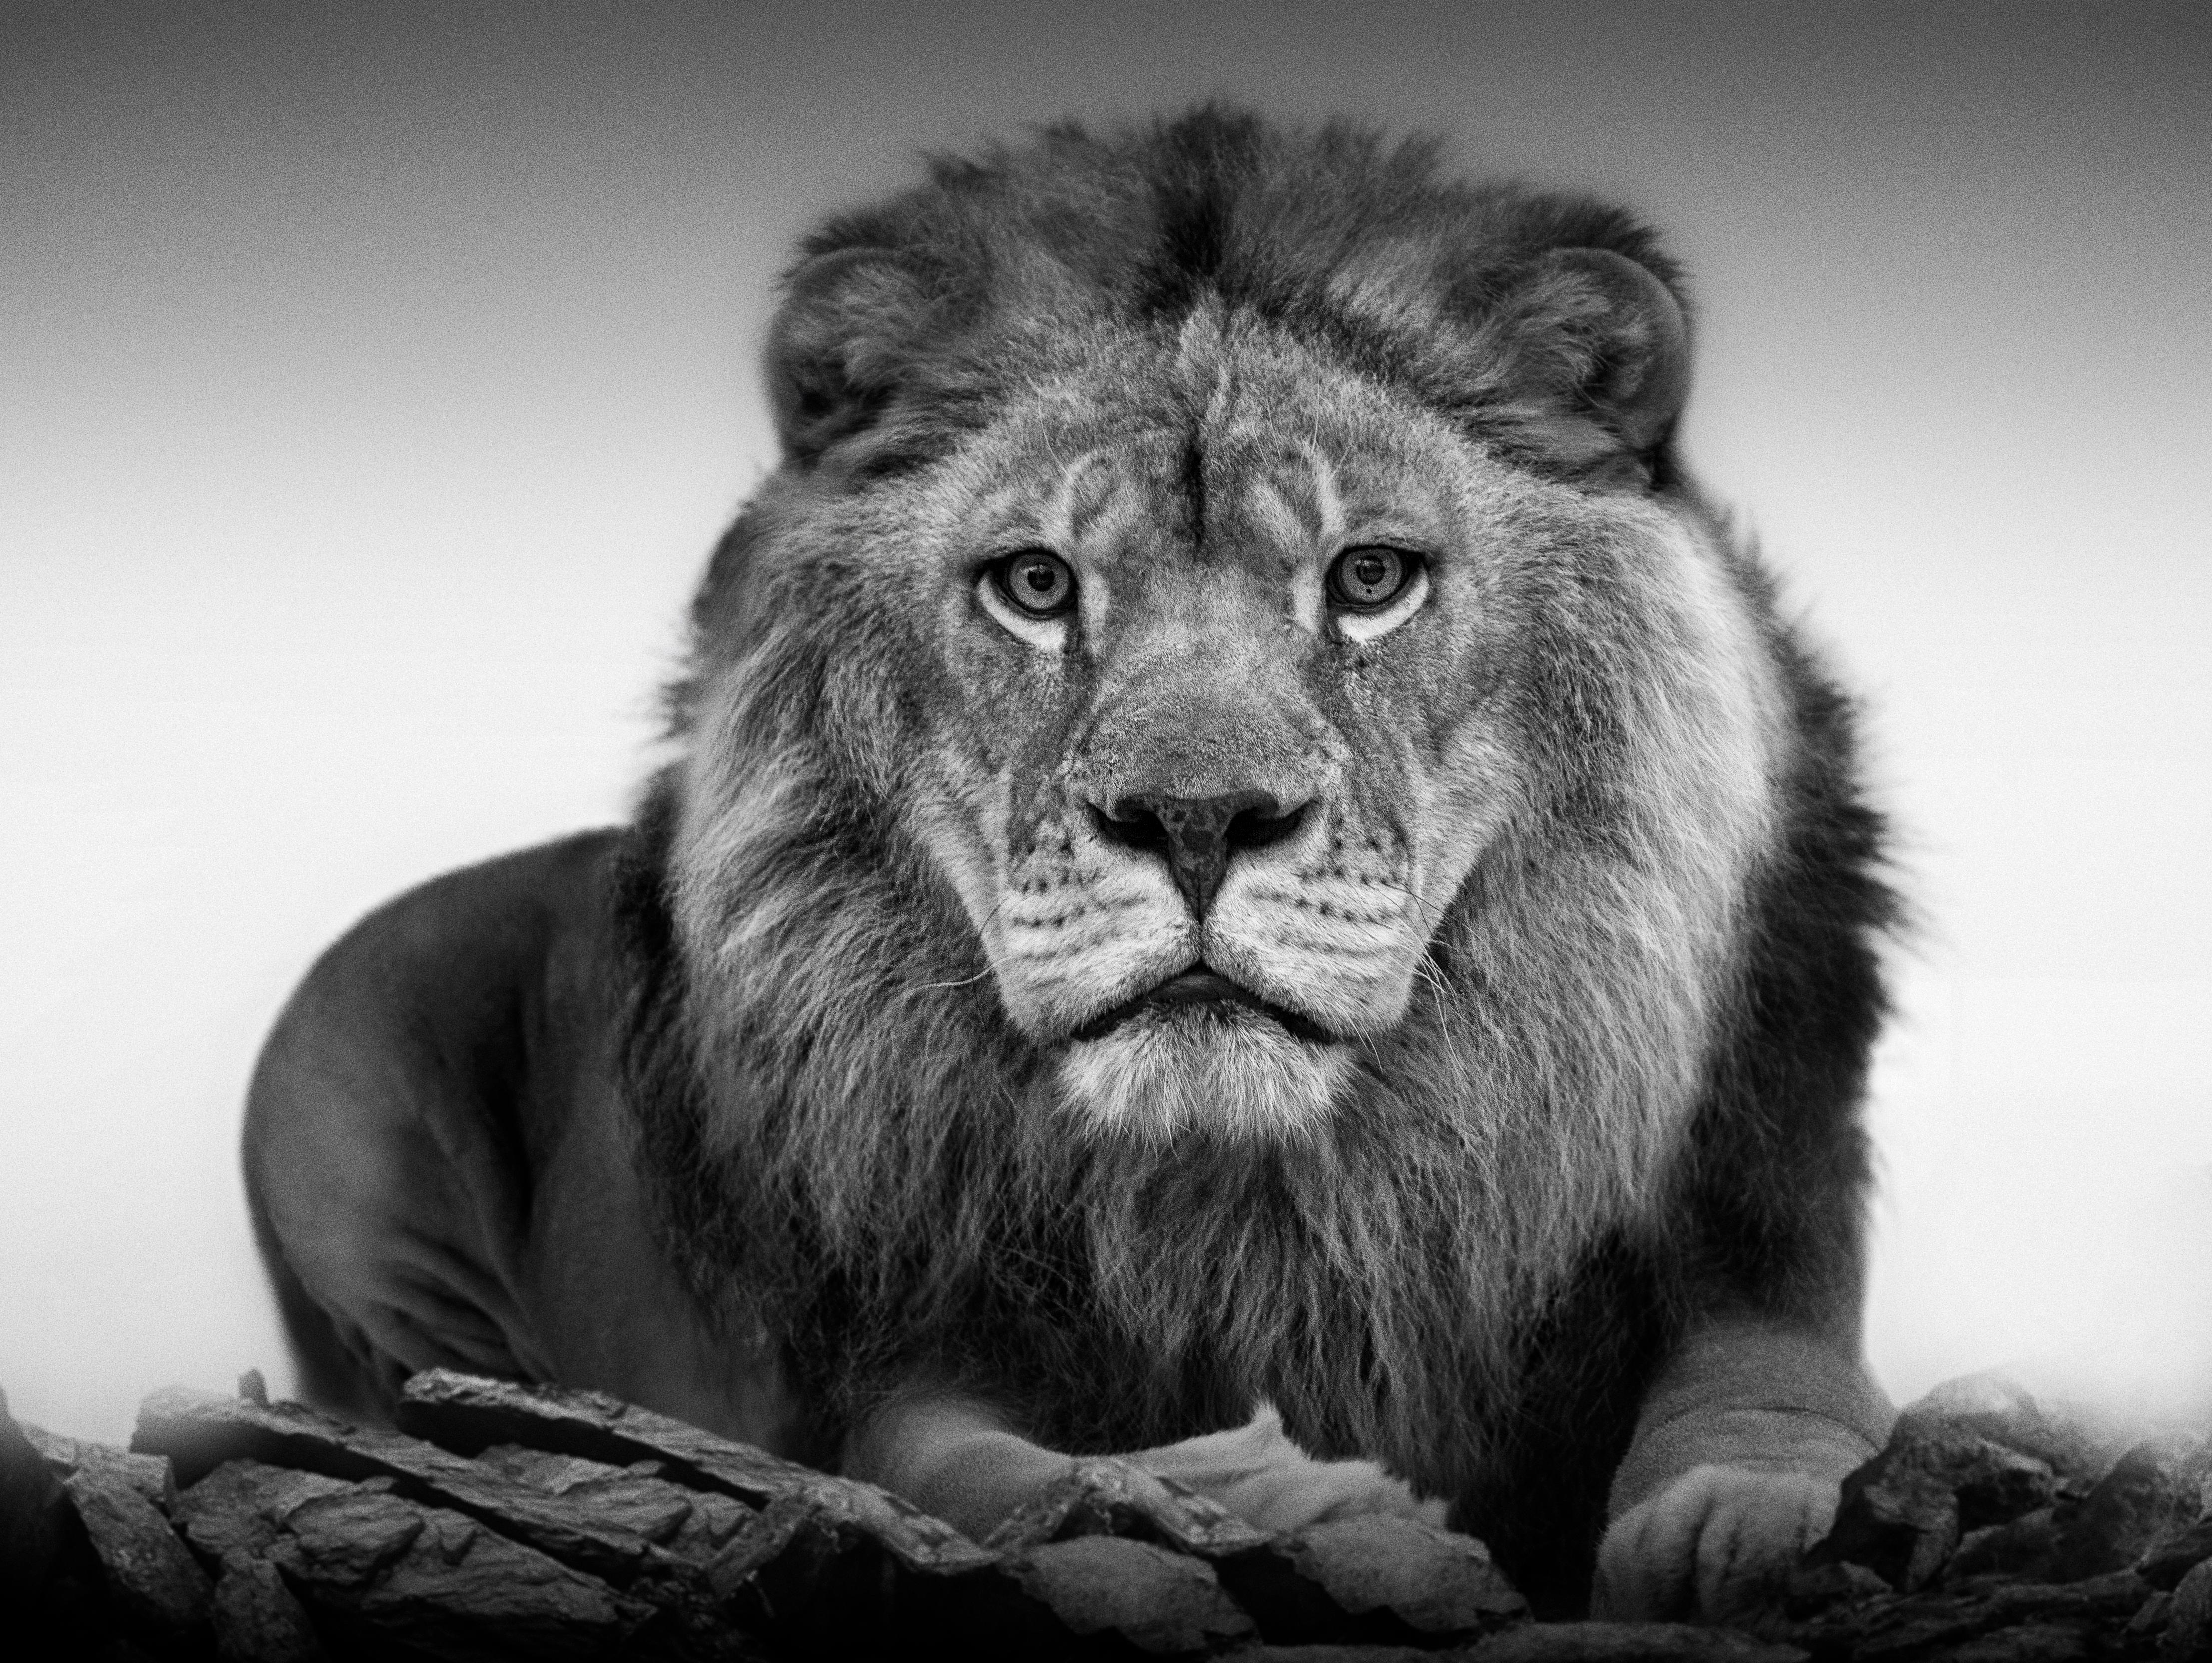 Black and White Photograph Shane Russeck - 36x48  "Portrait de lion", photographie de lion en noir et blanc  Photographie signée